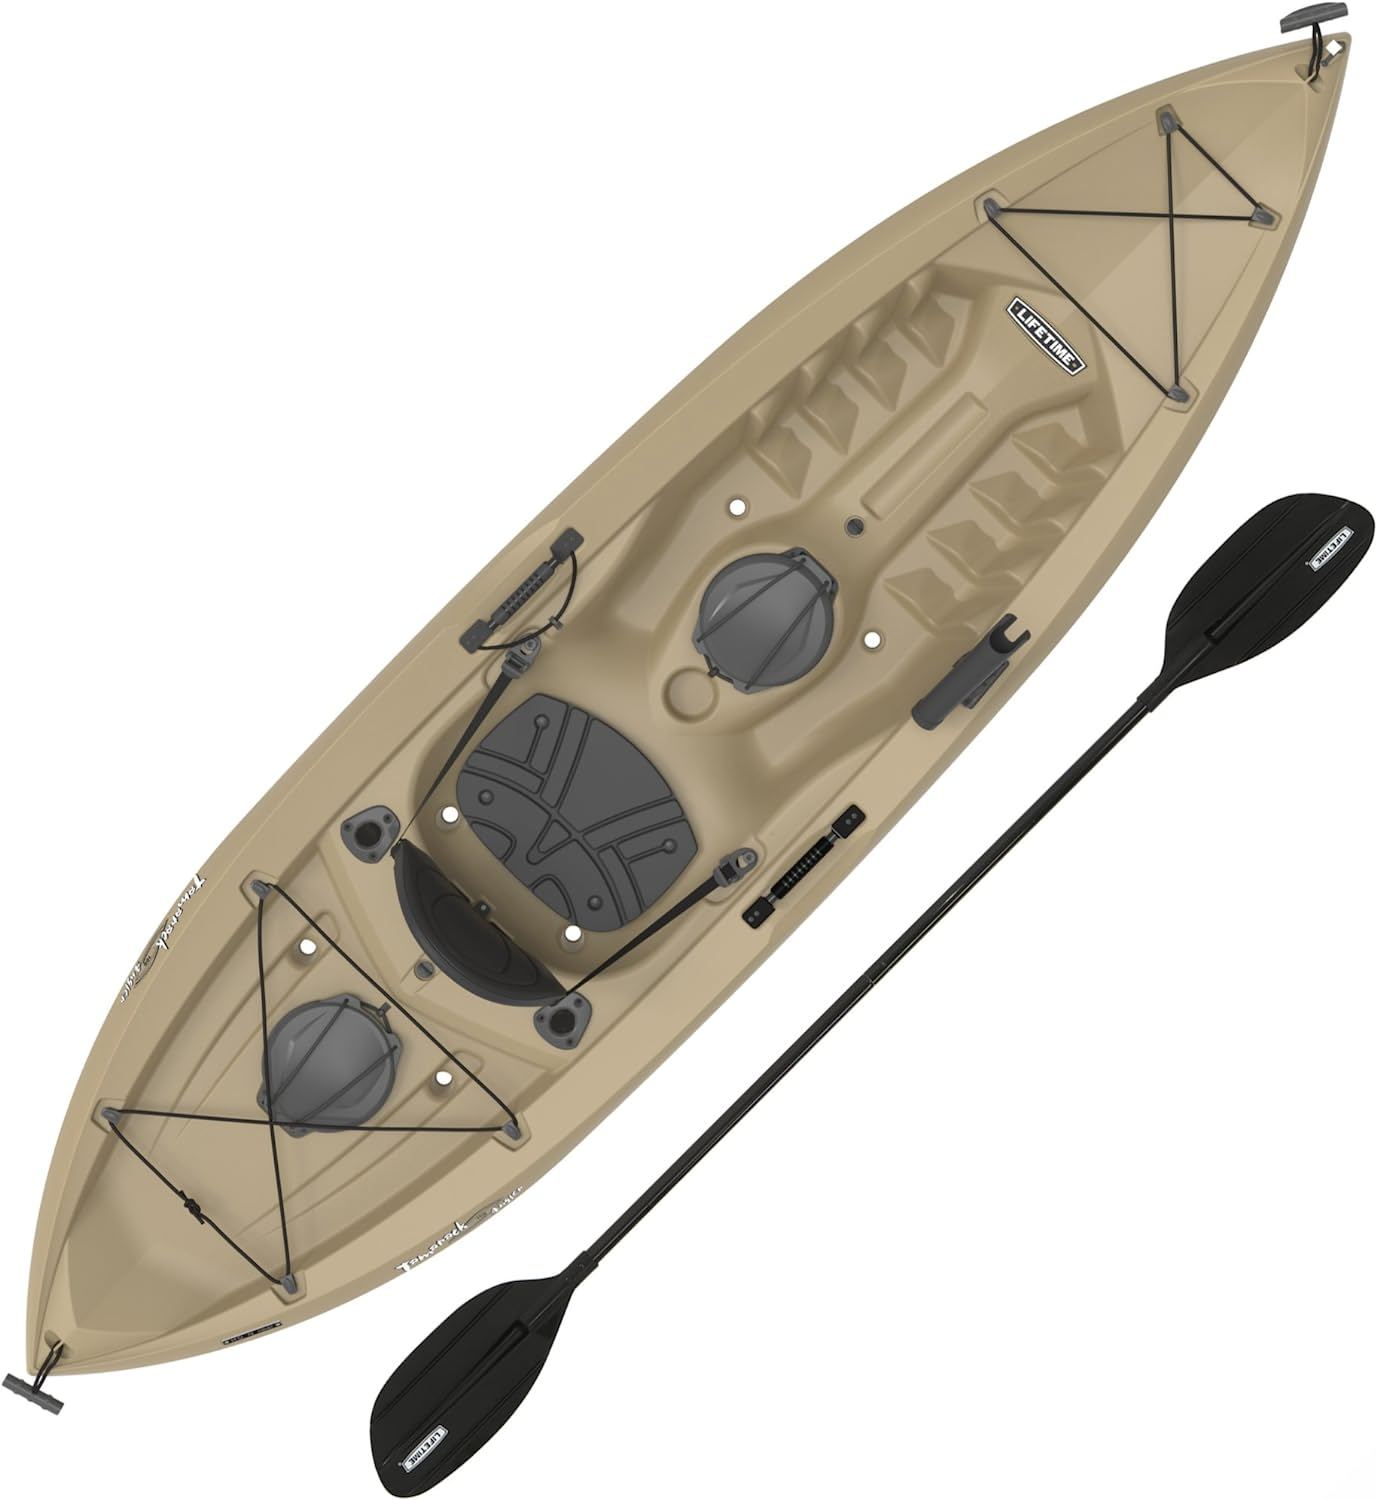 Kayak Canoe Storage Bag, Kayak Canoe Dinghy Gear Accessories